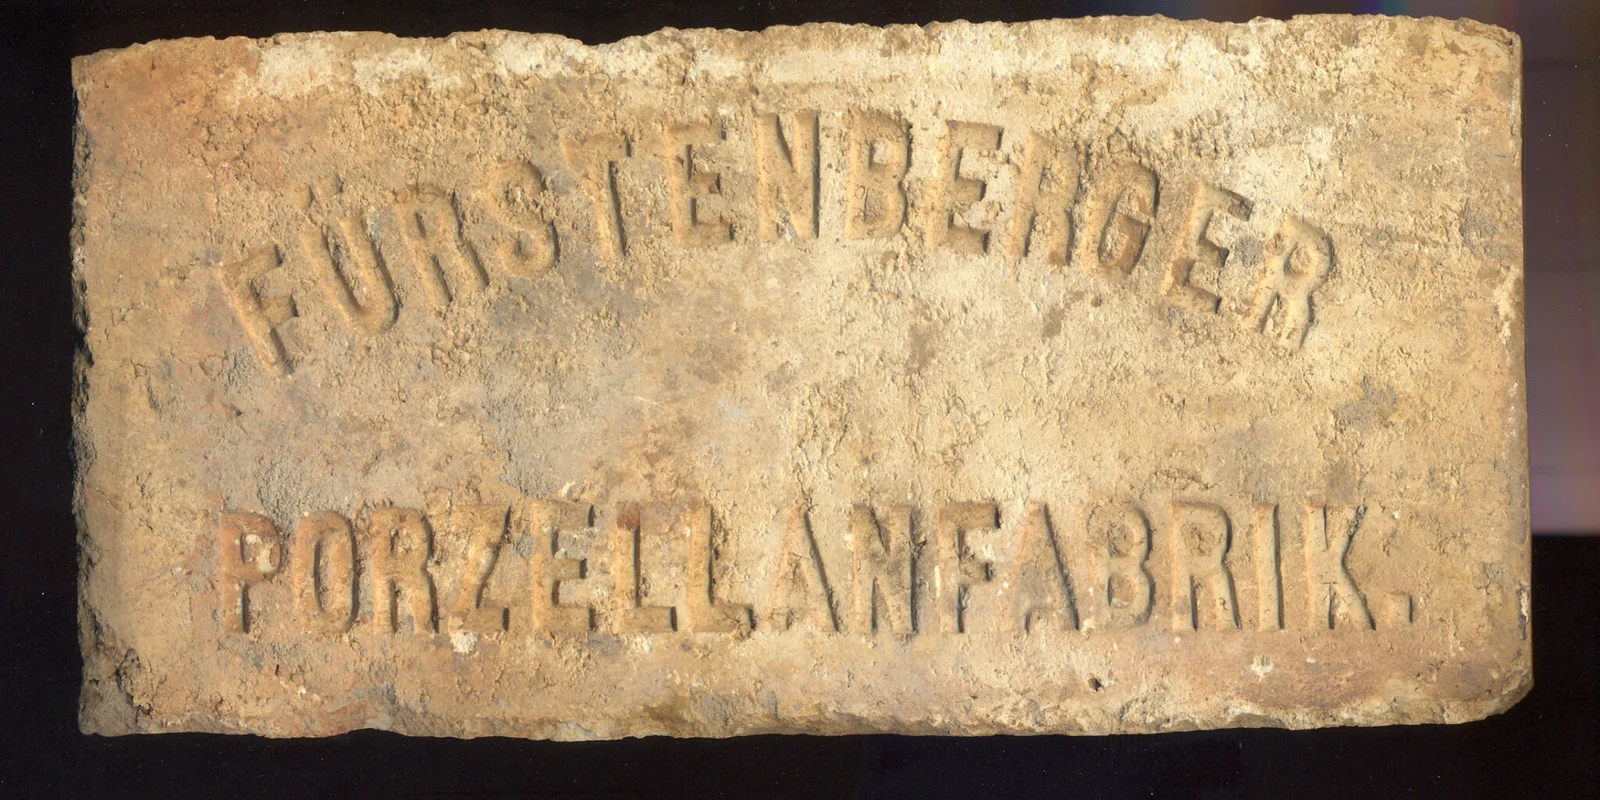 Plakette mit Inschrift "Fürstenberg Porzellanfabrik"